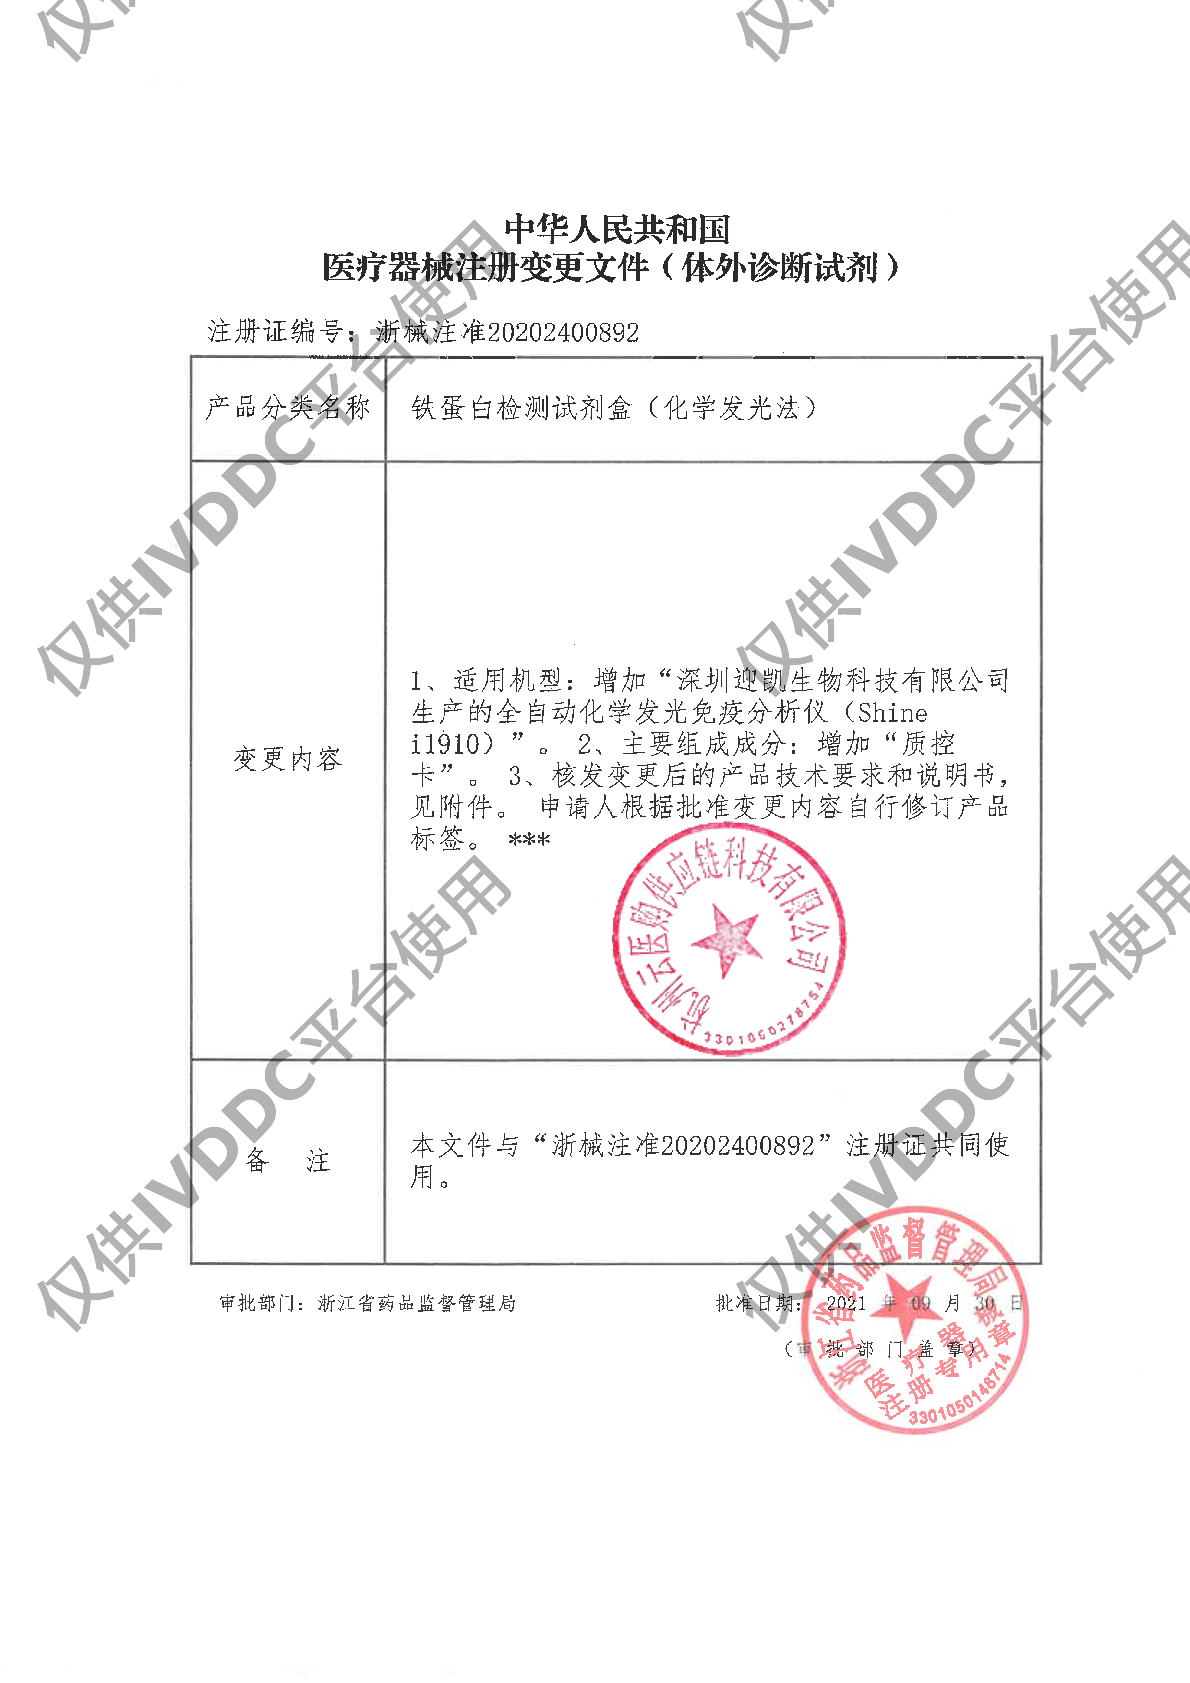 【宁波奥丞】铁蛋白检测试剂盒(化学发光法)注册证